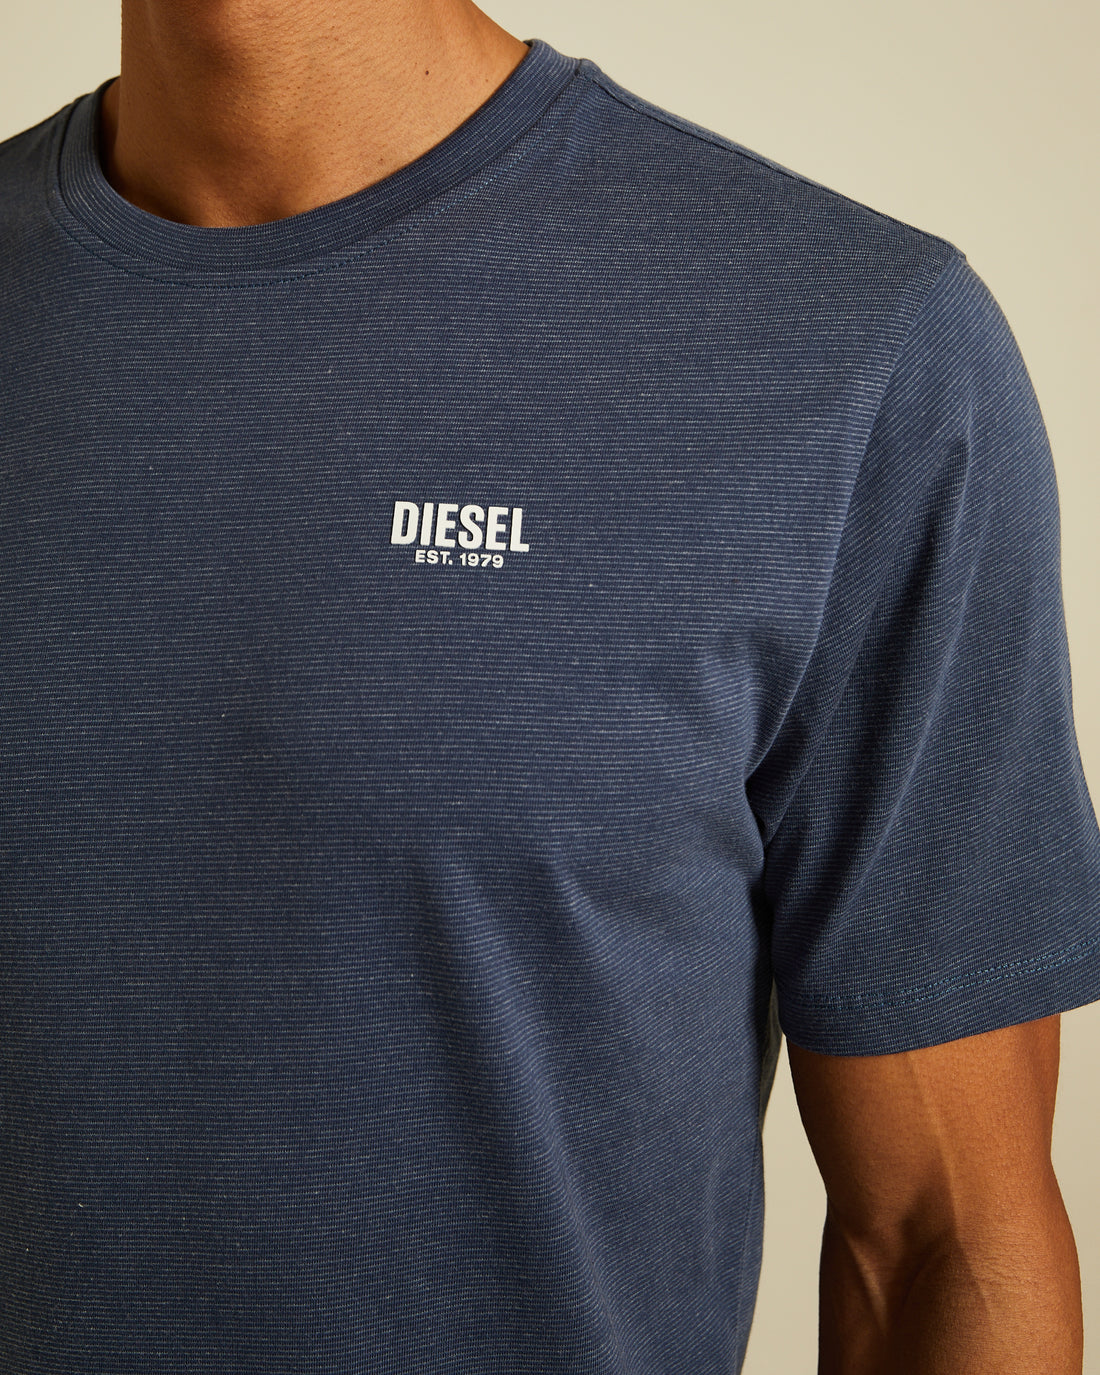 Diesel Tybalt Tee - Indigo Navy